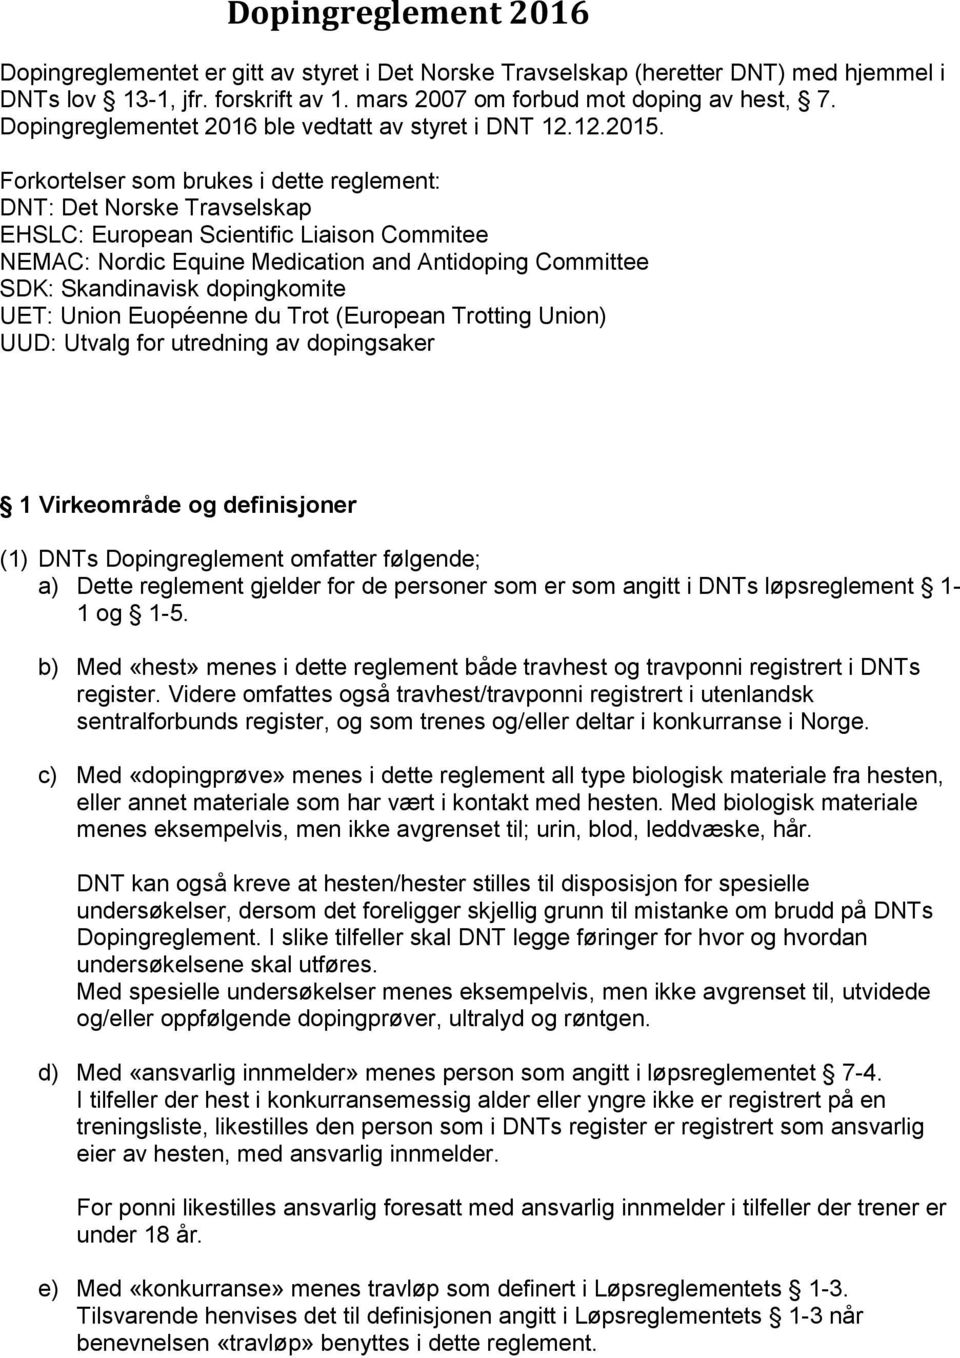 Forkortelser som brukes i dette reglement: DNT: Det Norske Travselskap EHSLC: European Scientific Liaison Commitee NEMAC: Nordic Equine Medication and Antidoping Committee SDK: Skandinavisk